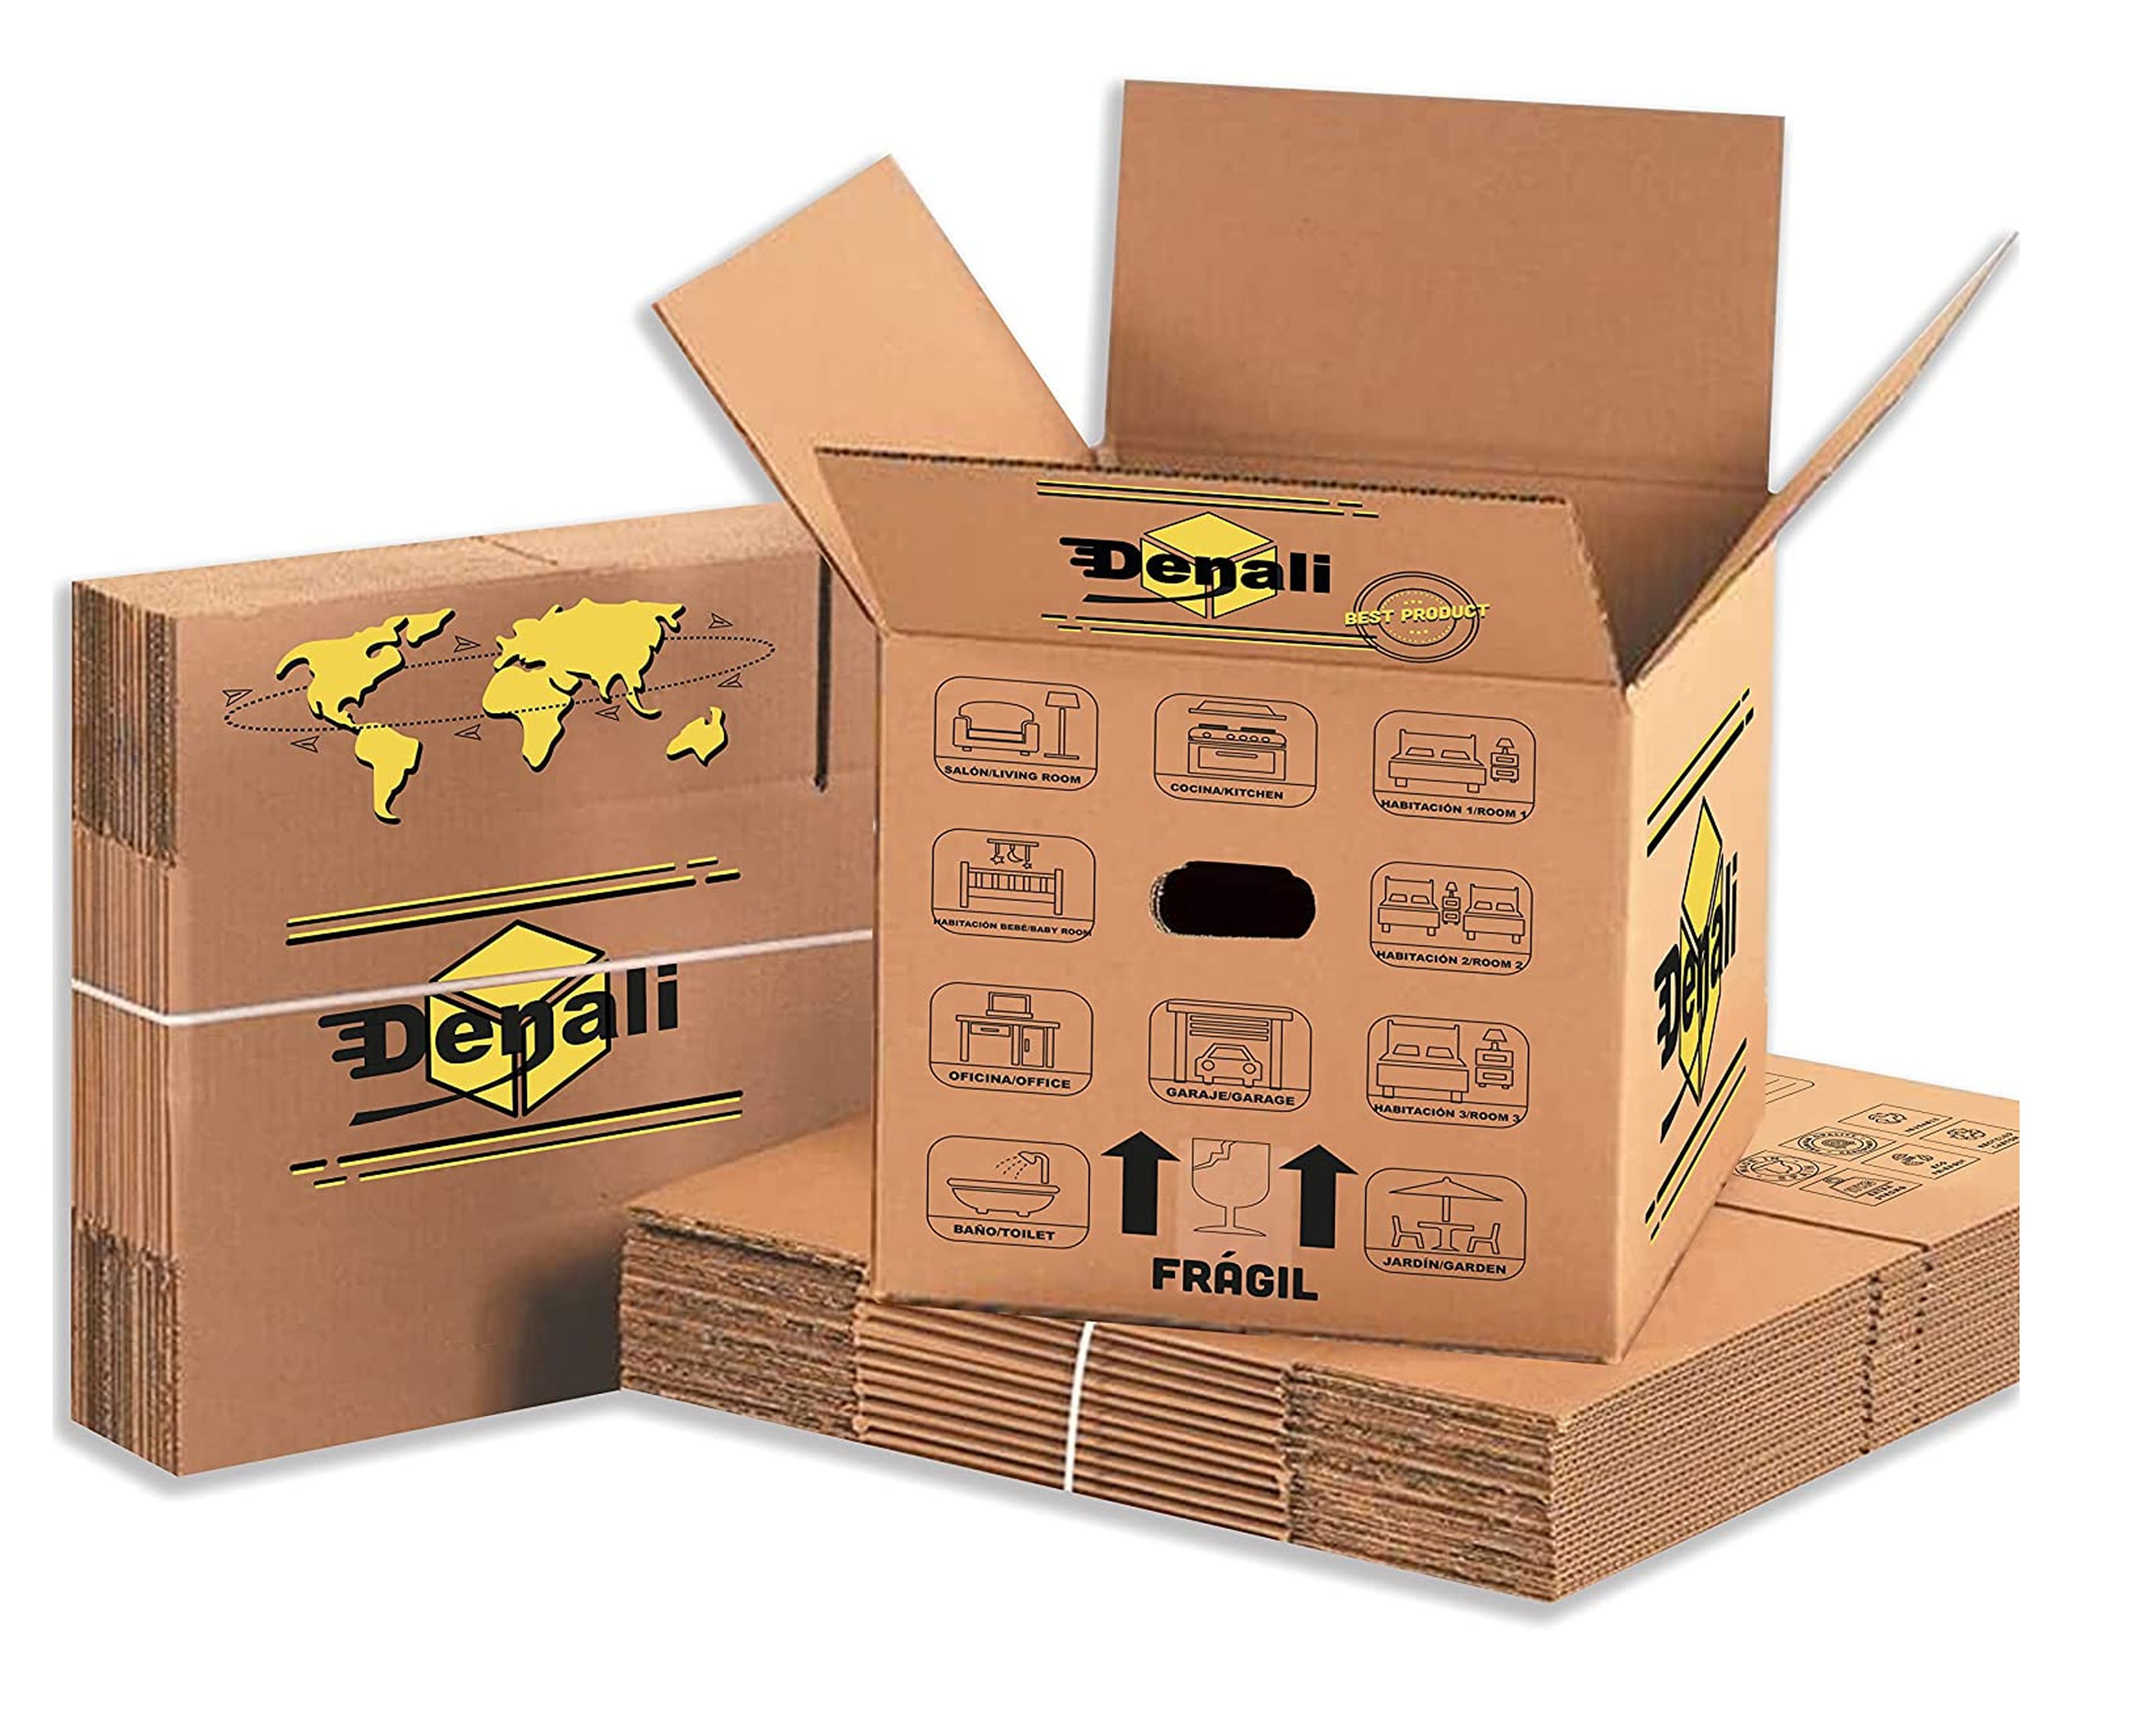 Mejores packs de cajas de cartón para mudanzas